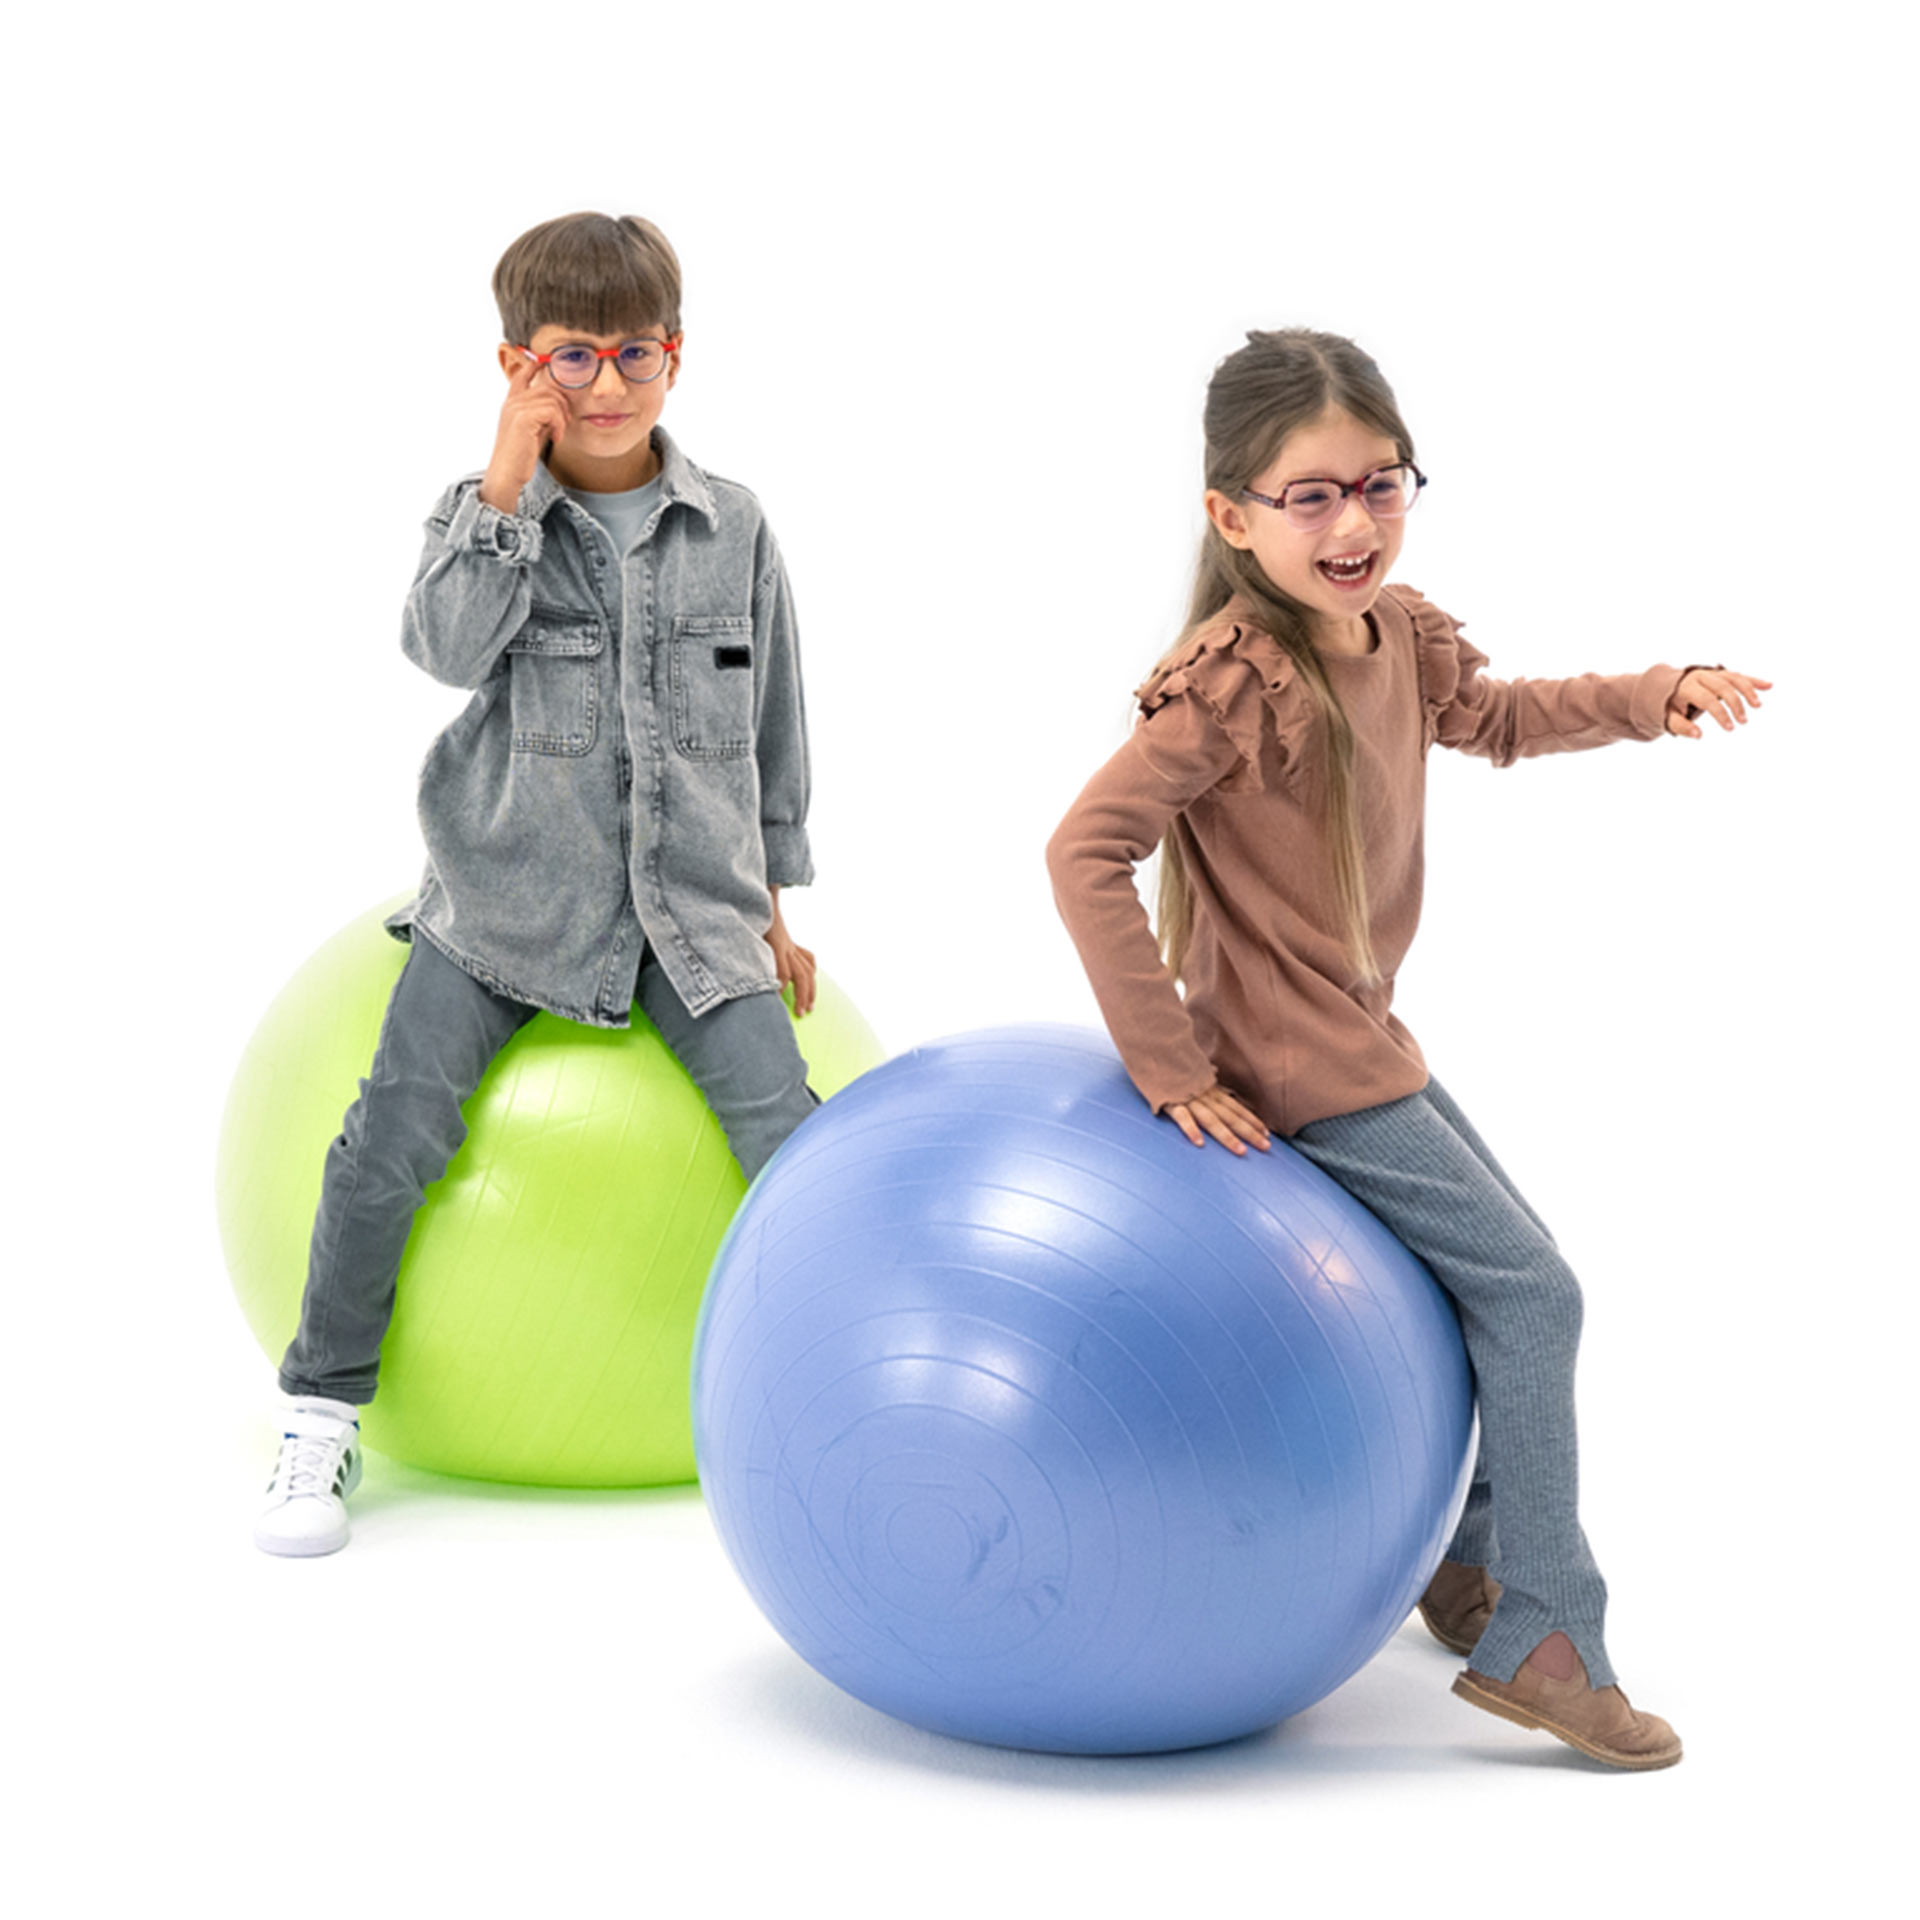 Chłopiec i dziewczynka noszący okulary skaczą radośnie na piłkach gimnastycznych.